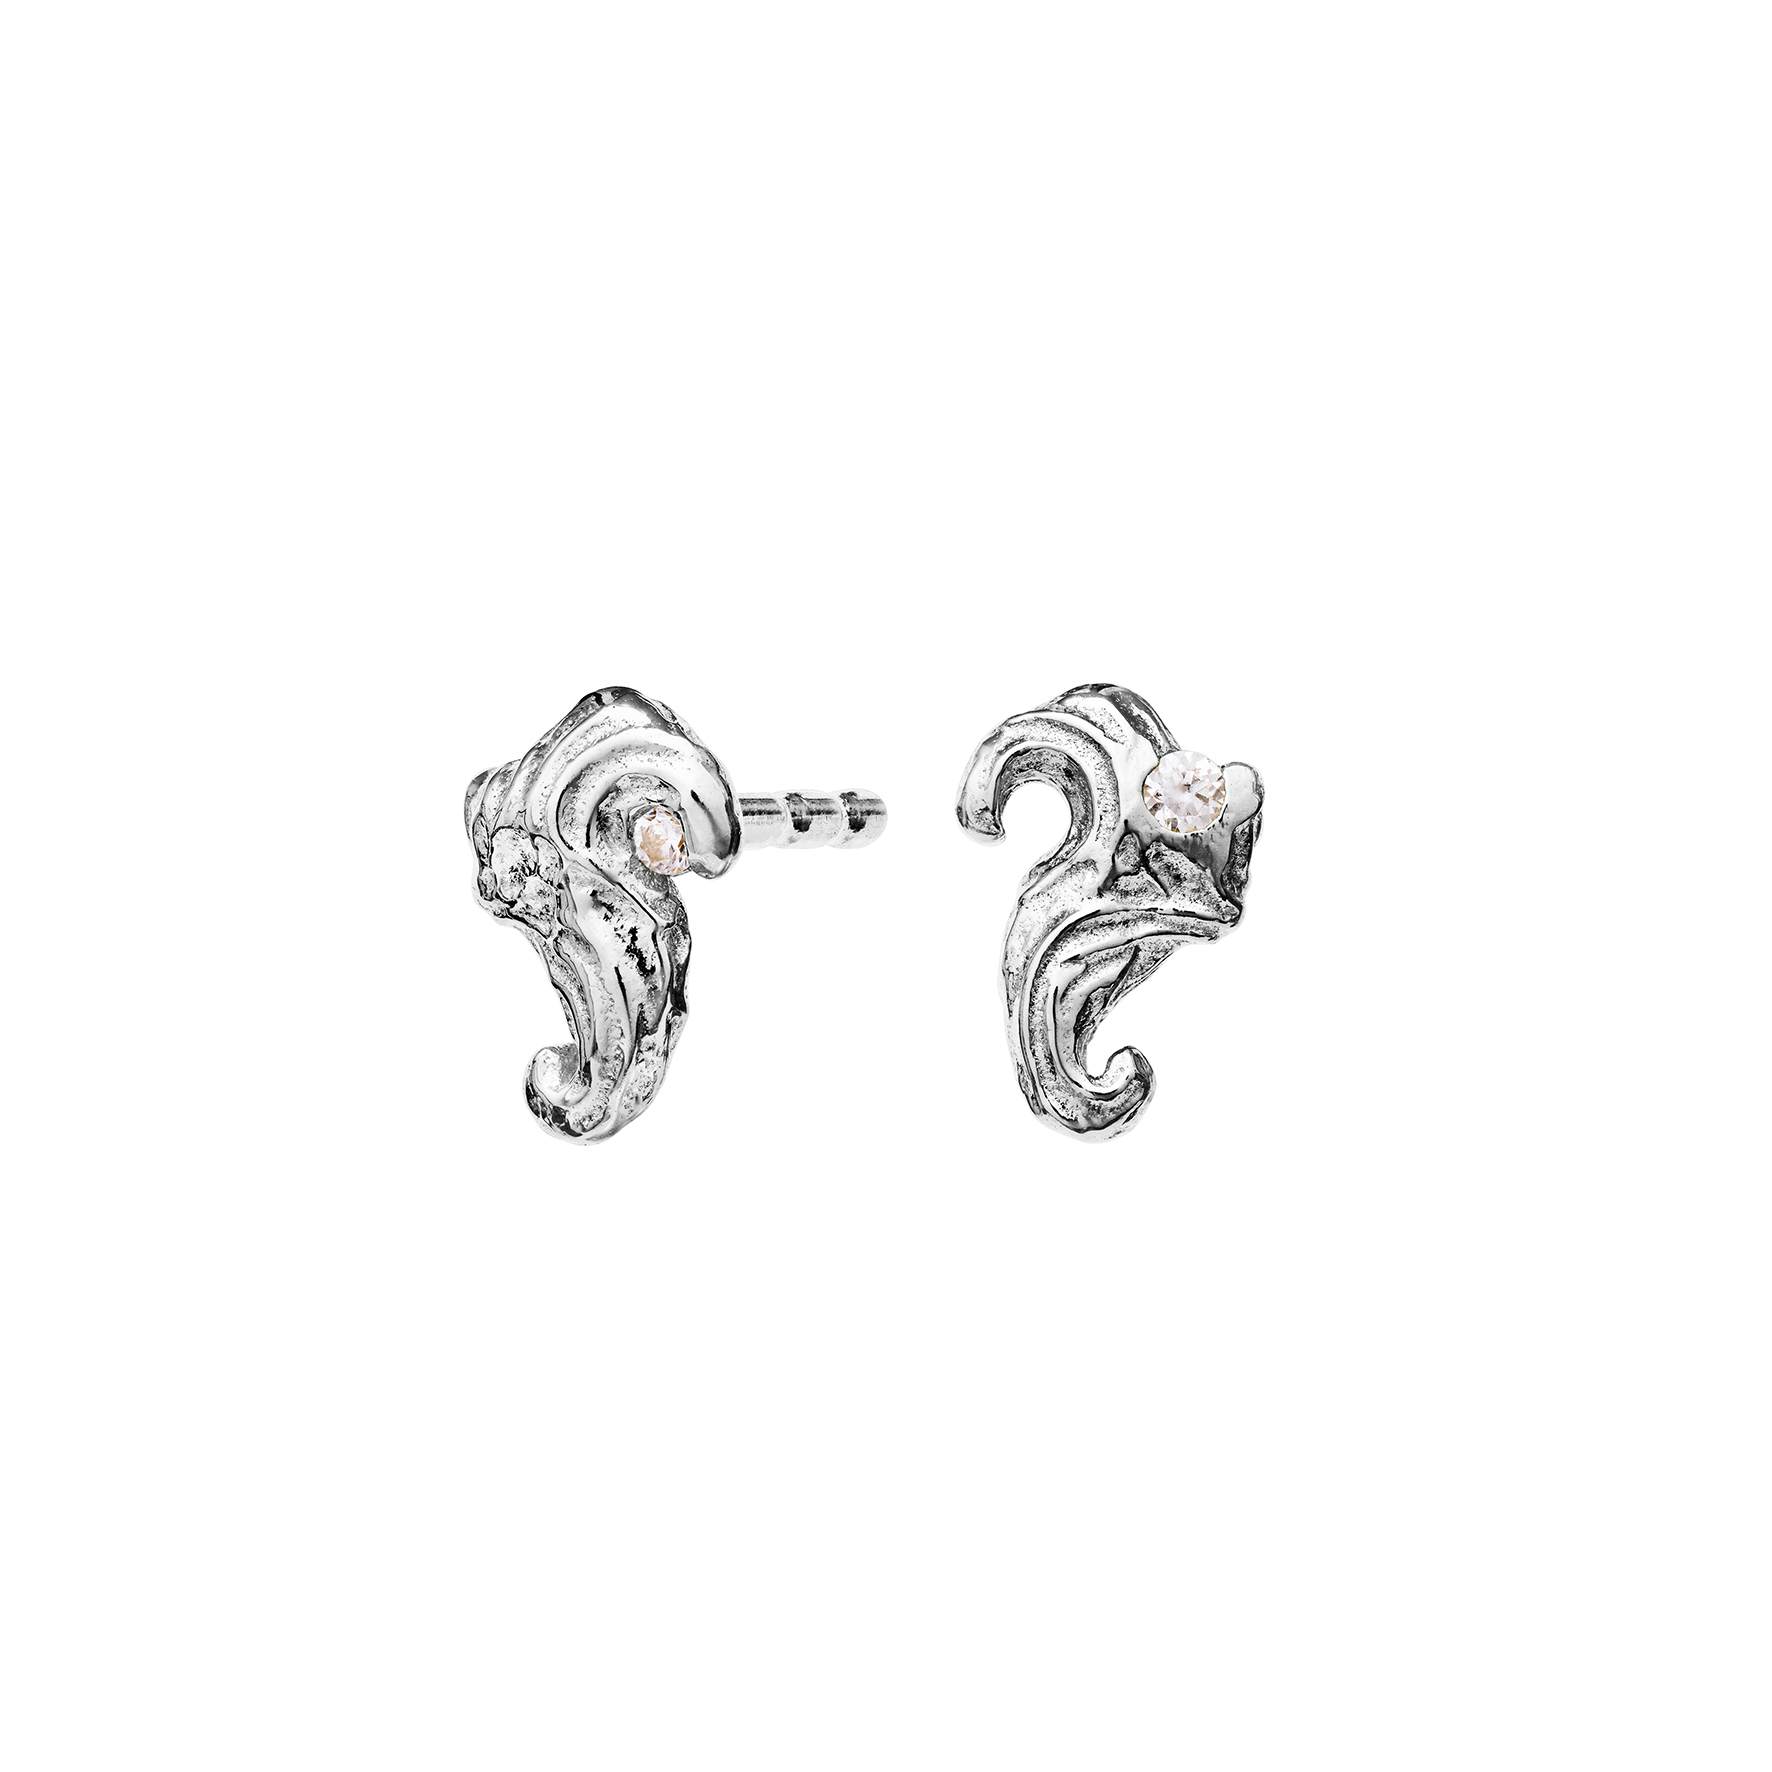 Enola Earrings from Maanesten in Silver Sterling 925